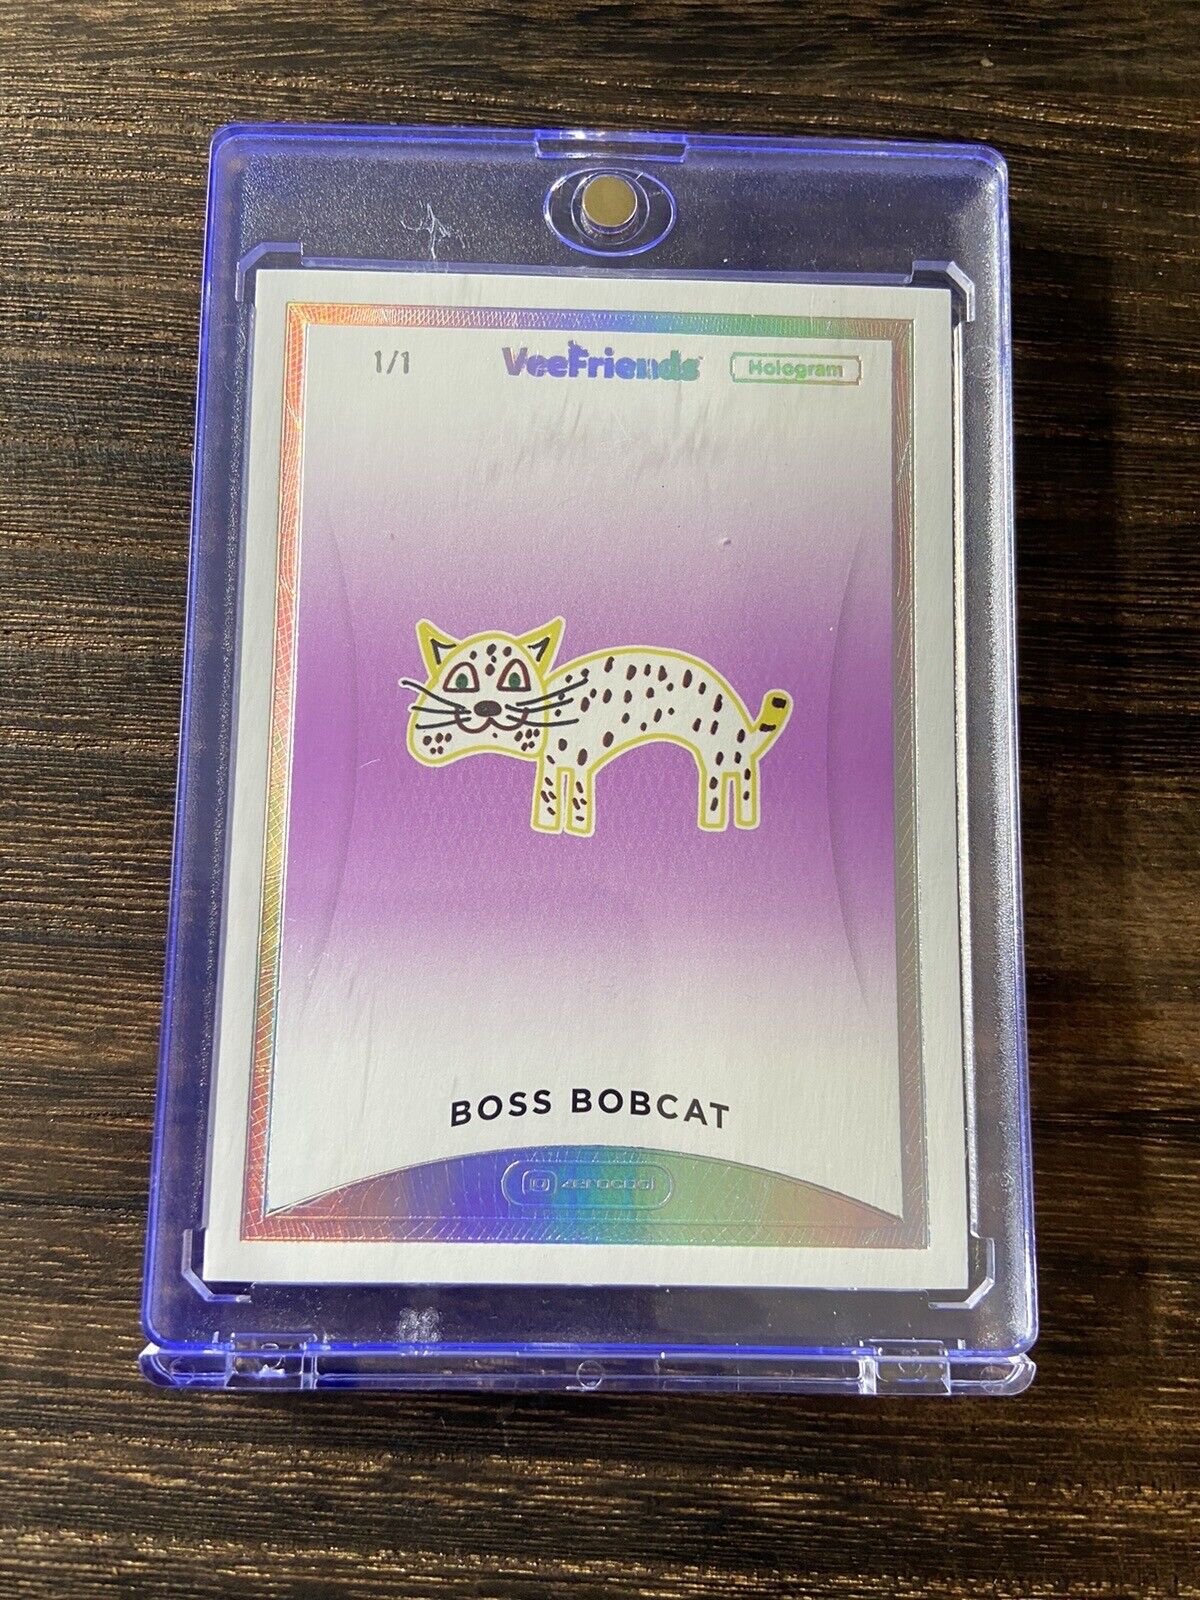 Boss Bobcat 1/1  - VeeFriends Series 1 - Zerocool Hologram